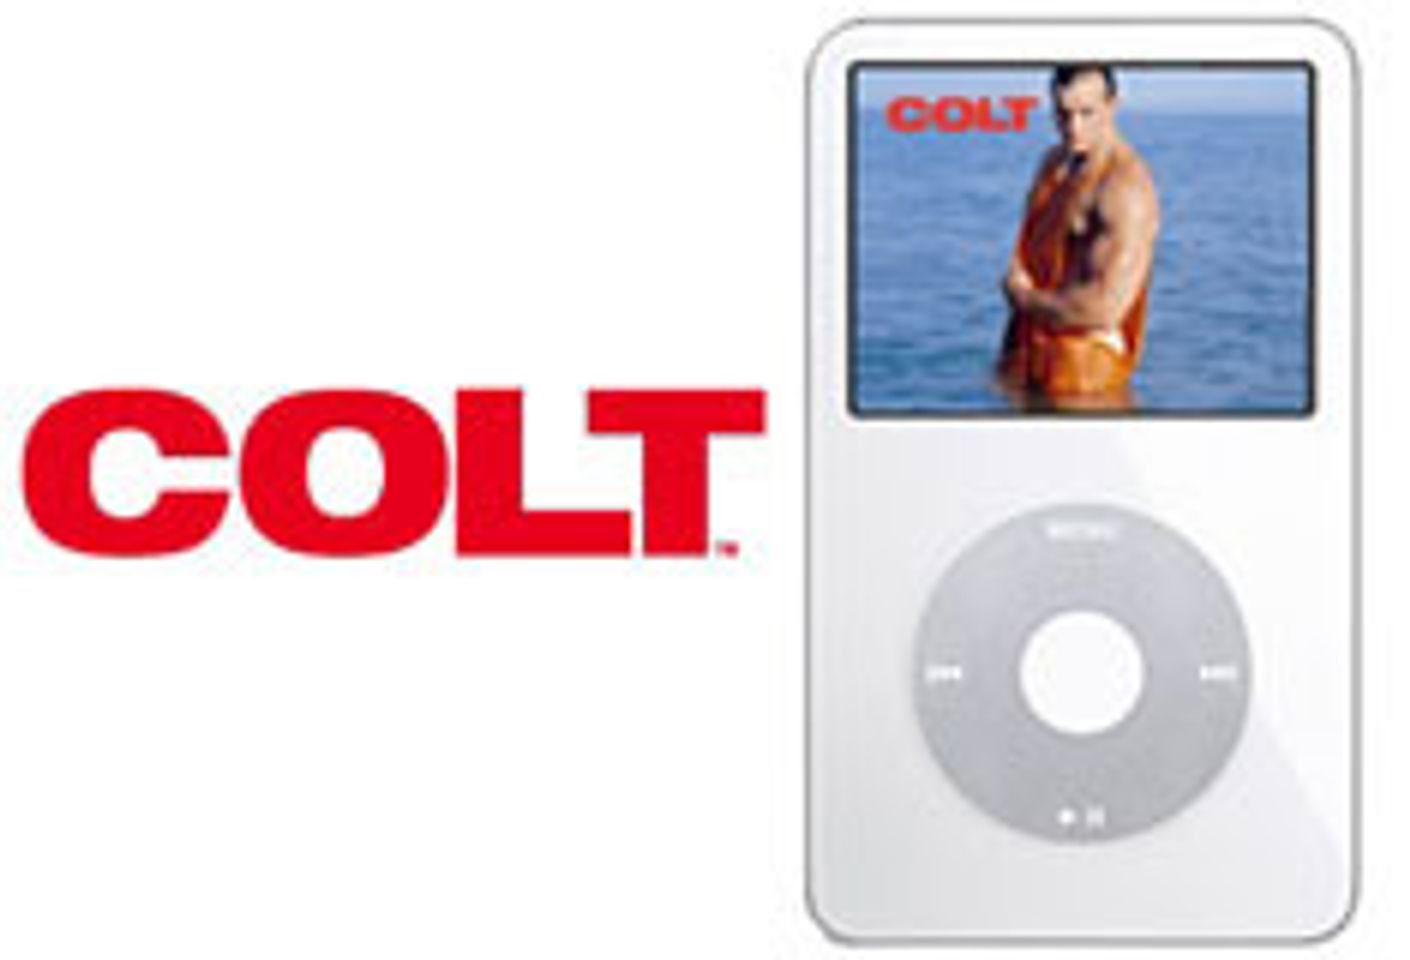 COLT Joins iPod Video Stampede